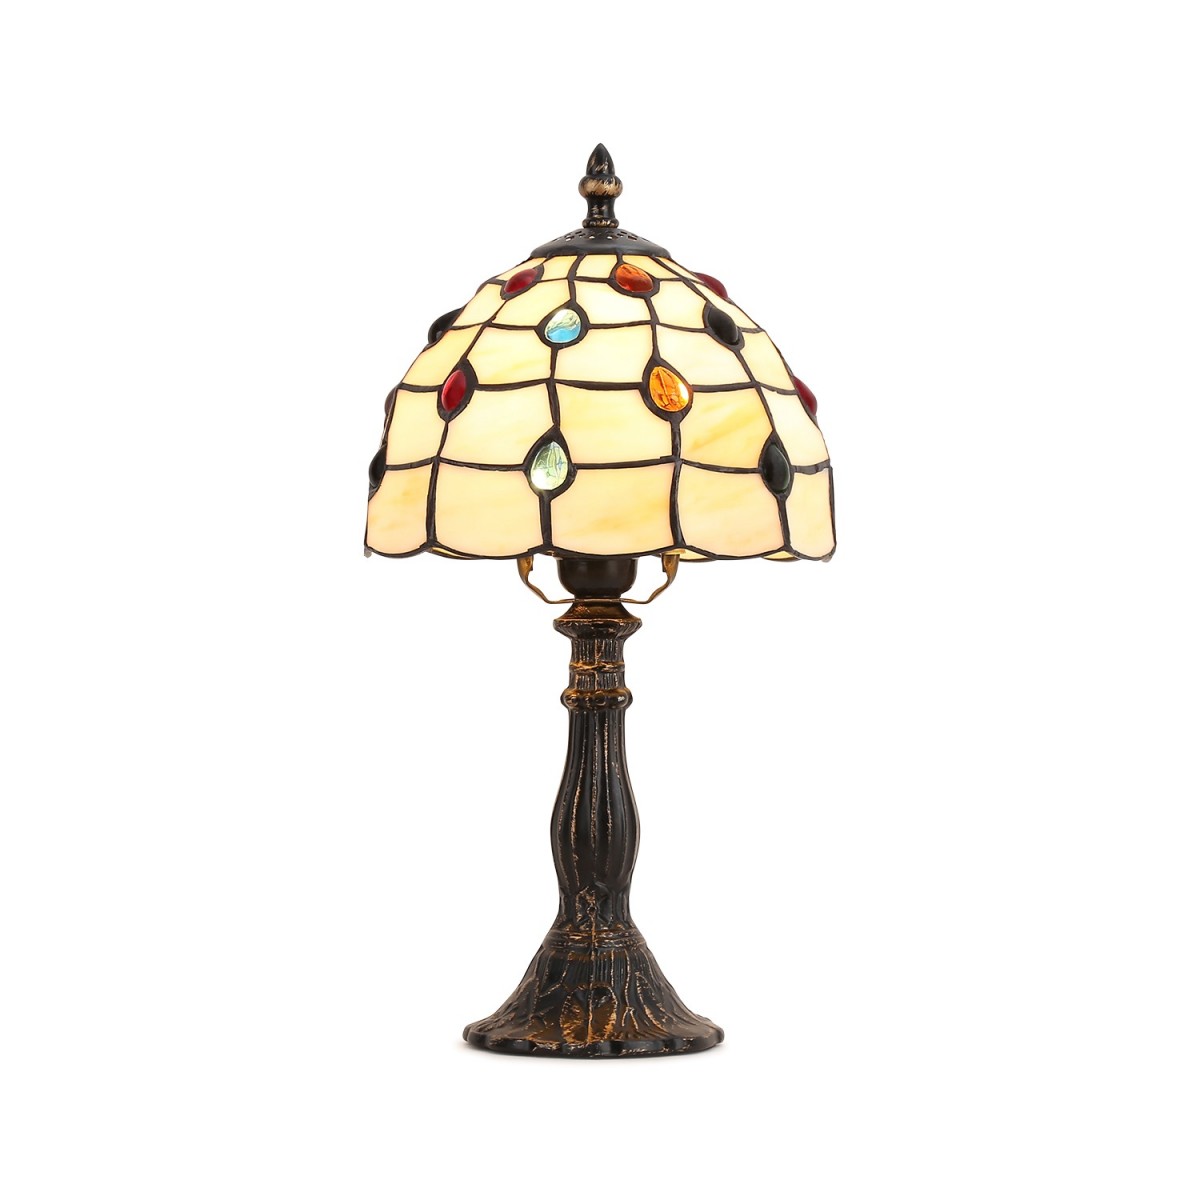 Lámpara de mesa "Rafa" inspiración "Tiffany" - Ø 20cm